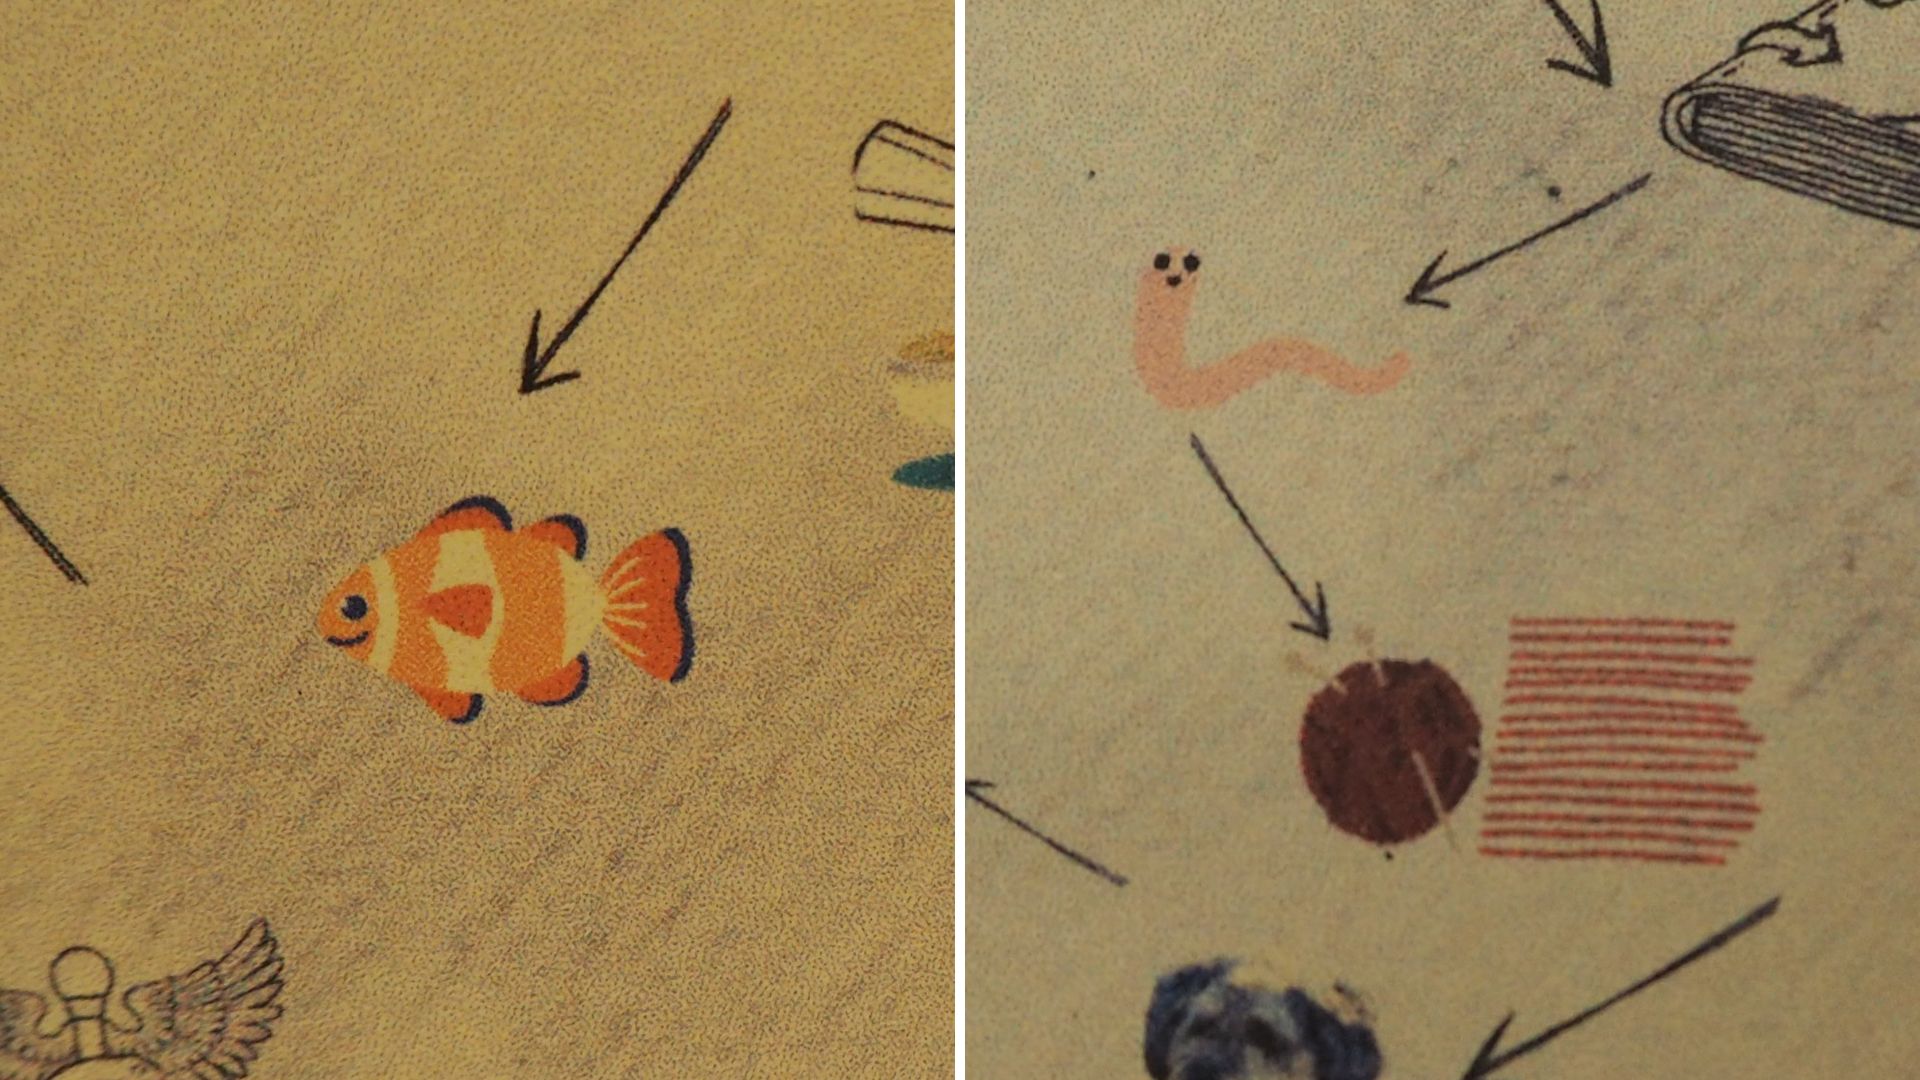 Zwei Details von der Stadtkarte: Zu sehen sind ein Clownfisch auf dem einem Bild, am zweiten Bild ein Wurm, ein Wollknäuel und Linien